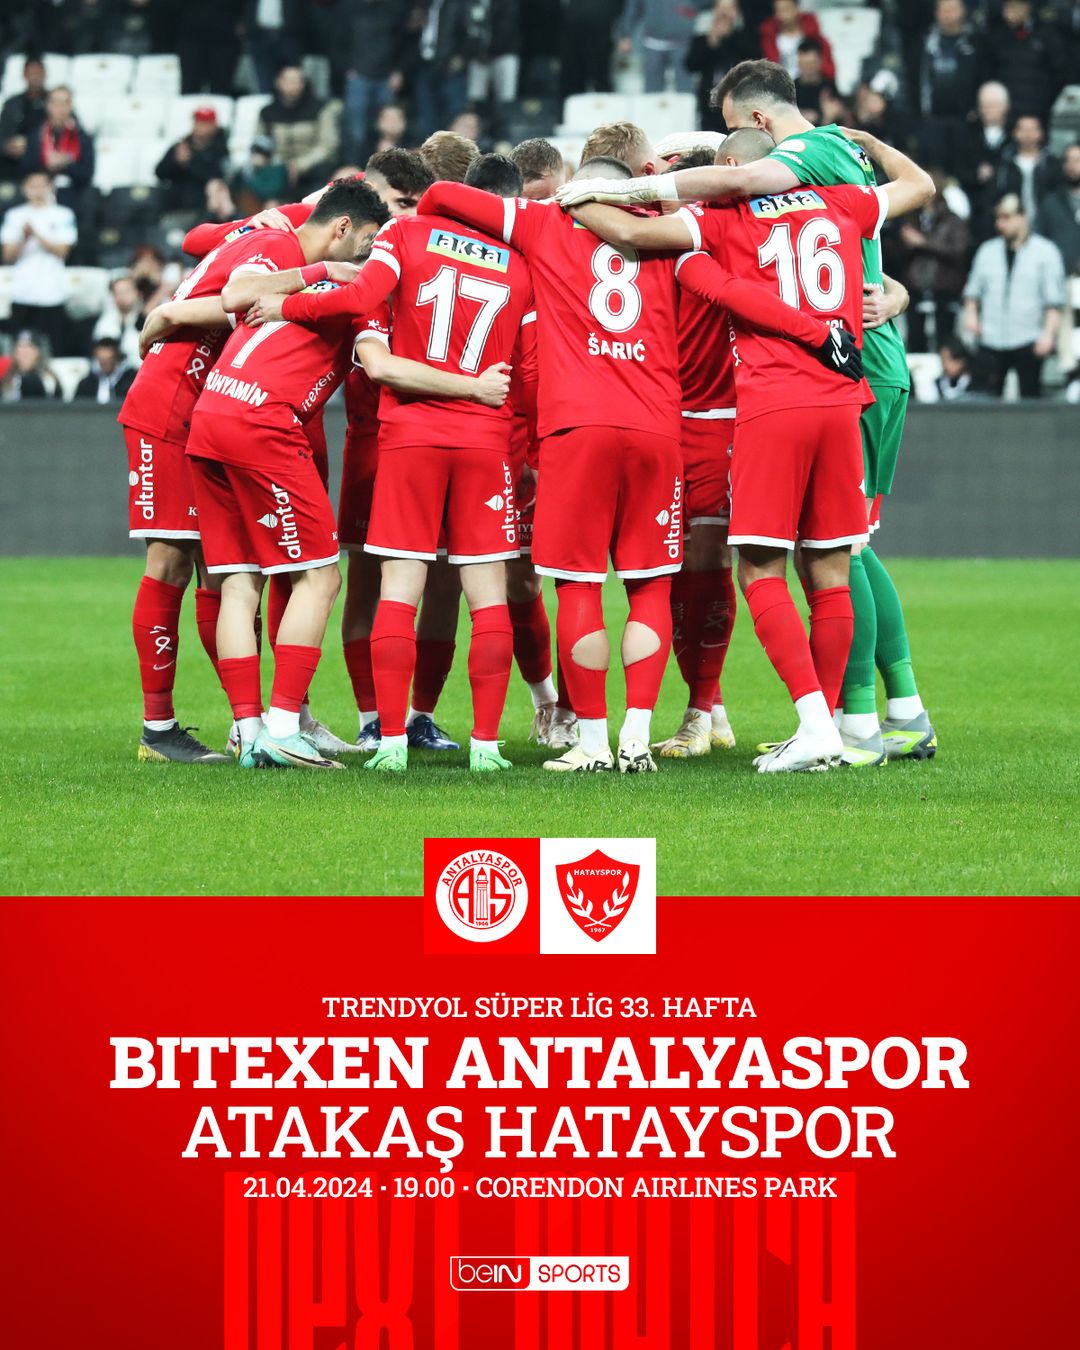 Antalyaspor ve Atakaş Hatayspor Taraftarları Bu Kritik Mücadeleye Odaklandı